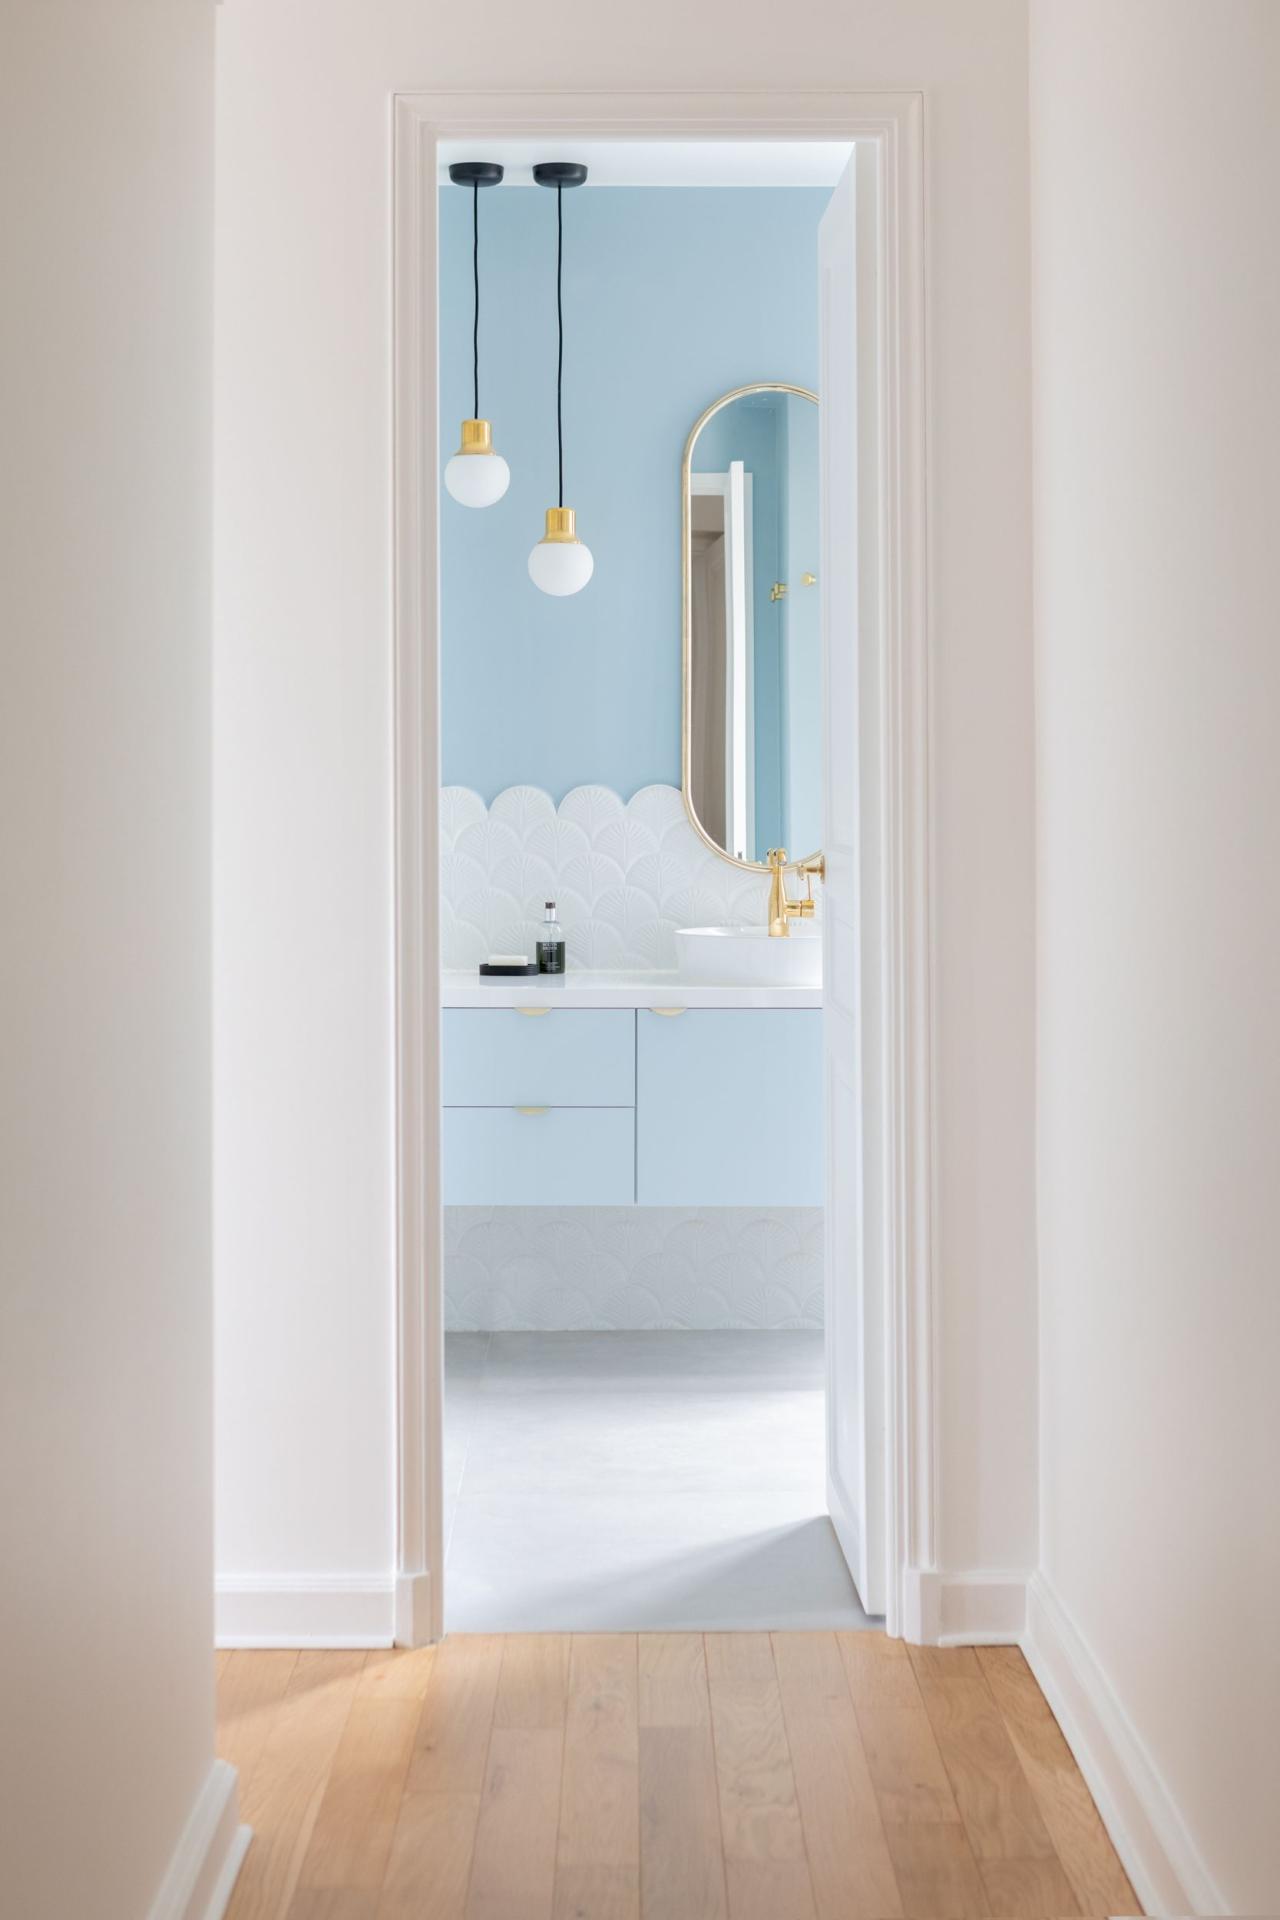 A Ciel voilé bathroom cabinet with feet